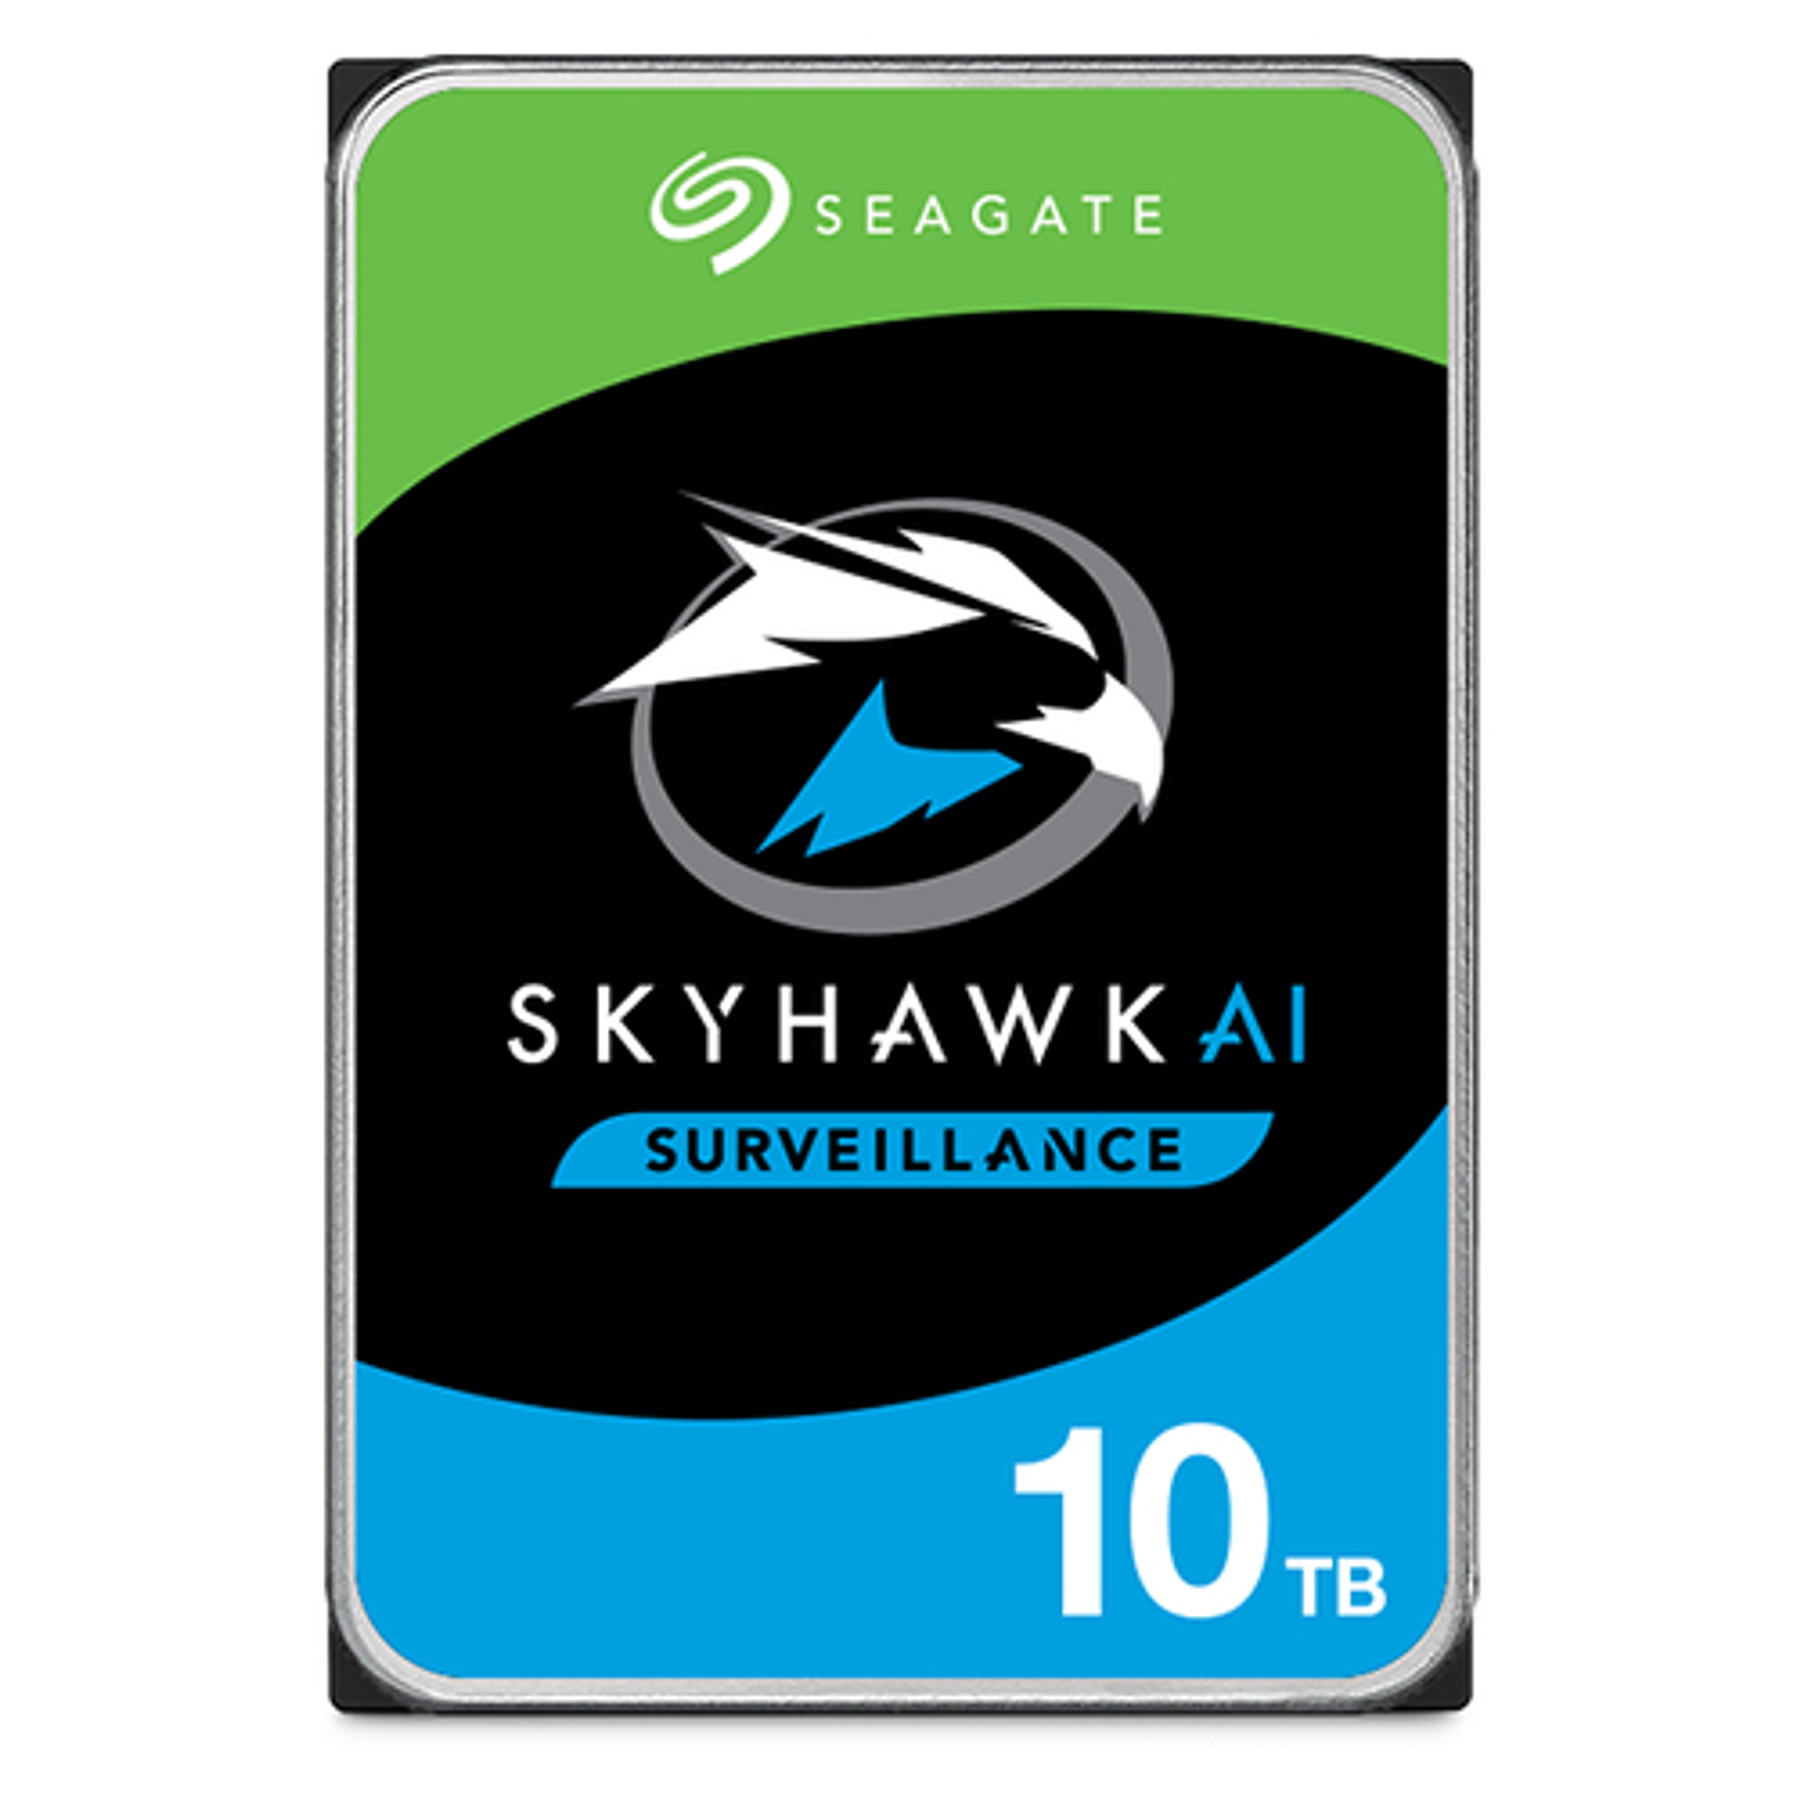 Seagate SkyHawk AI [ST10000VE001] Disco Duro Interno 10 TB 3.5